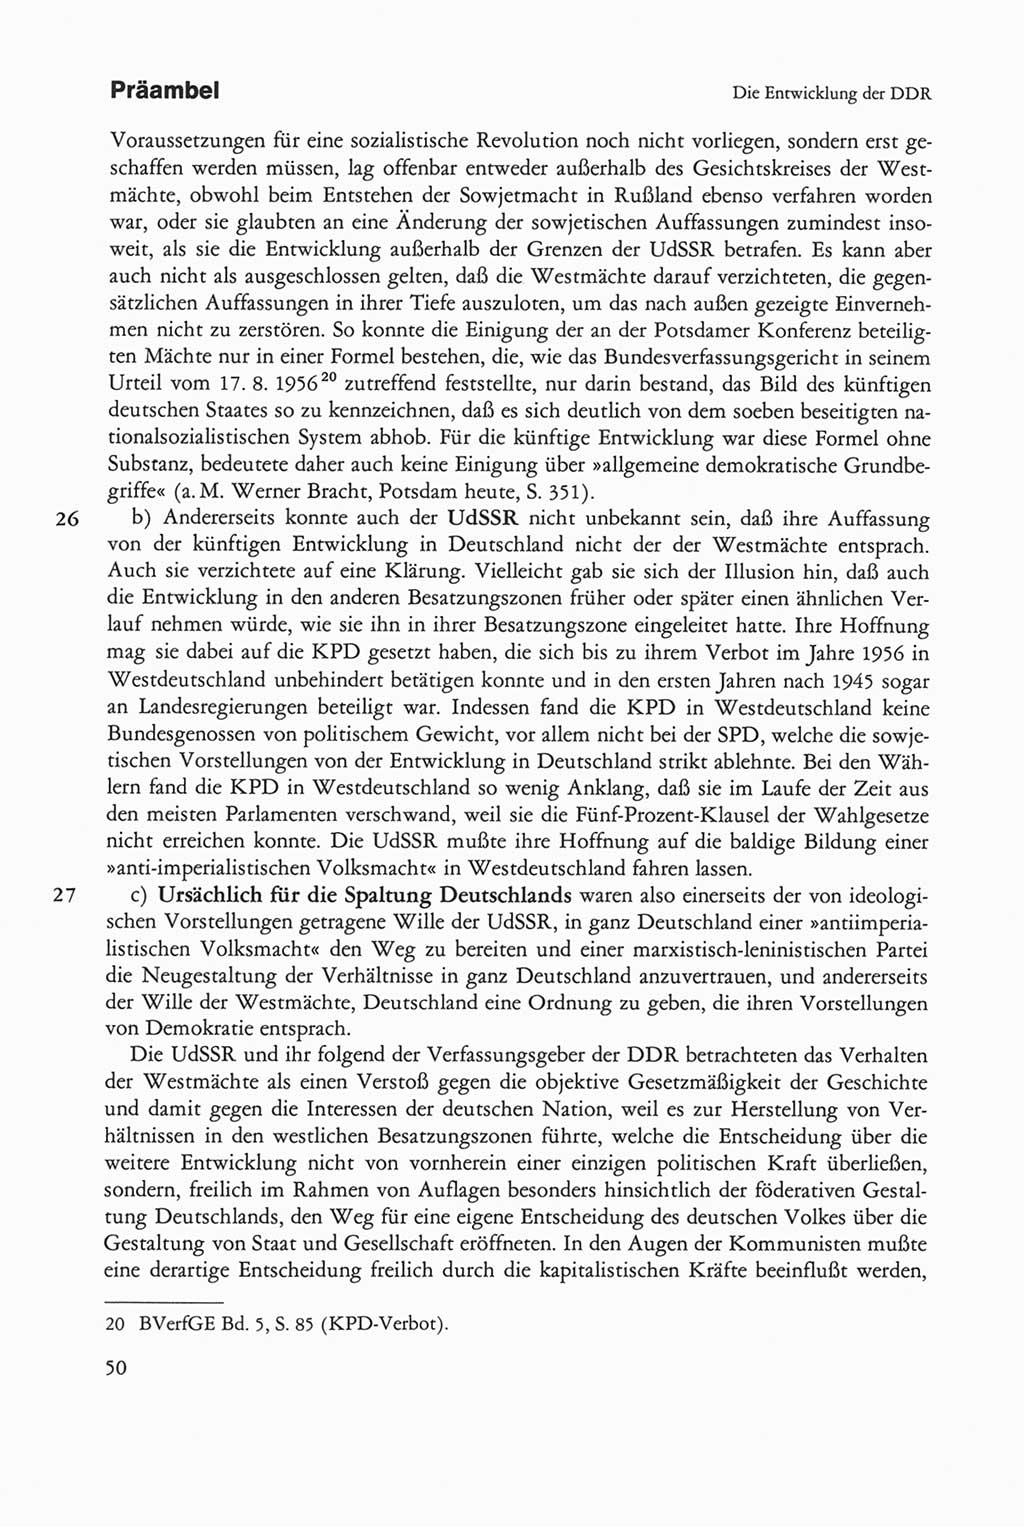 Die sozialistische Verfassung der Deutschen Demokratischen Republik (DDR), Kommentar mit einem Nachtrag 1997, Seite 50 (Soz. Verf. DDR Komm. Nachtr. 1997, S. 50)